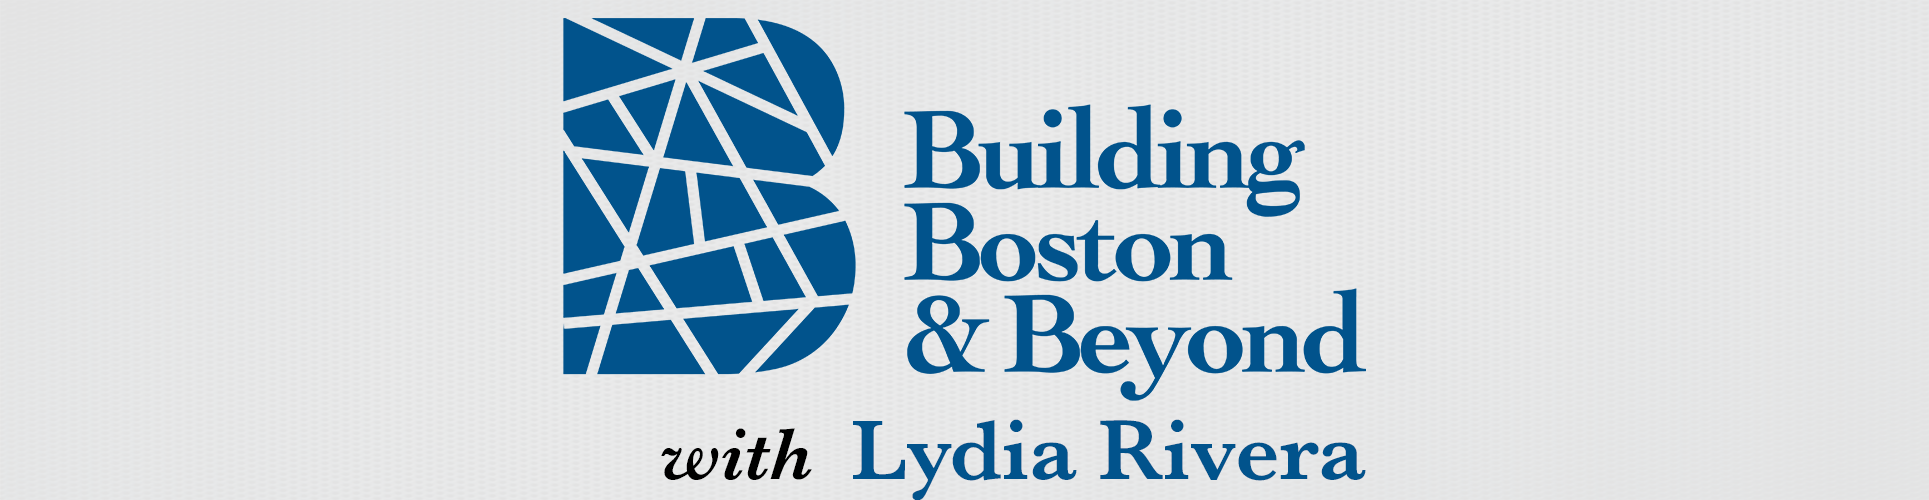 Building Boston & Beyond